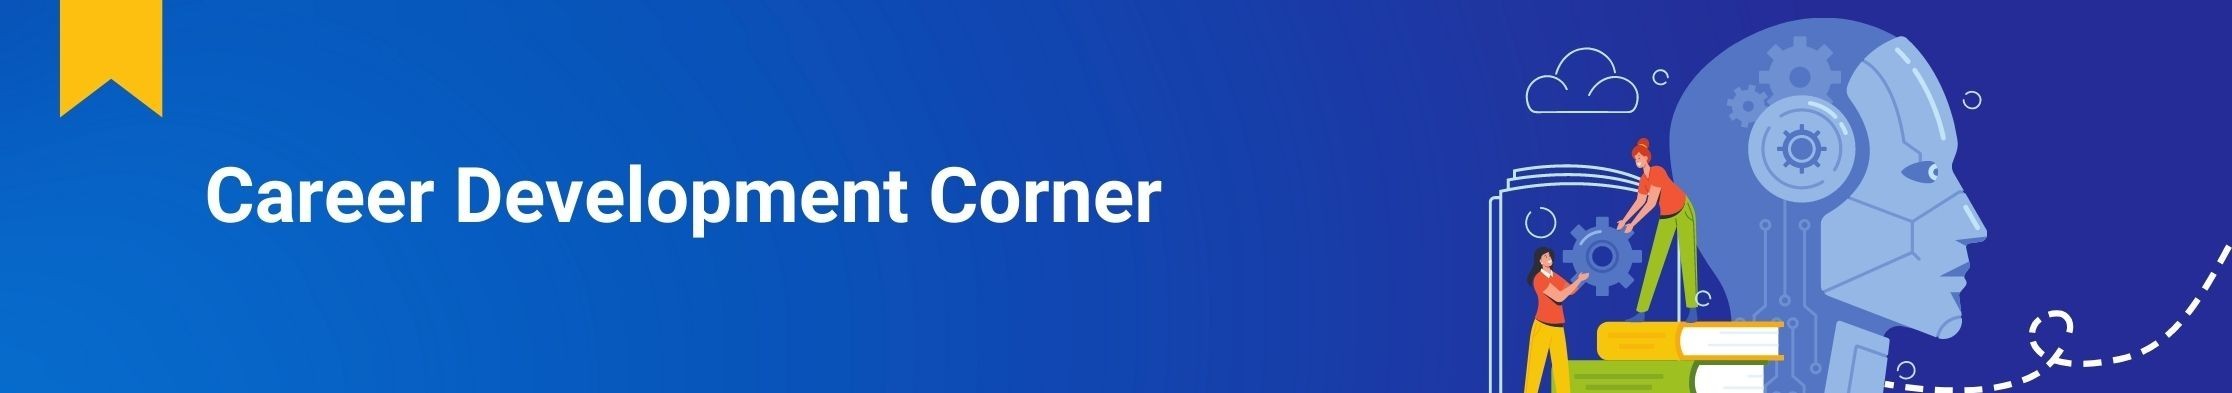 Career Development Corner - Newsletter - Data and AI